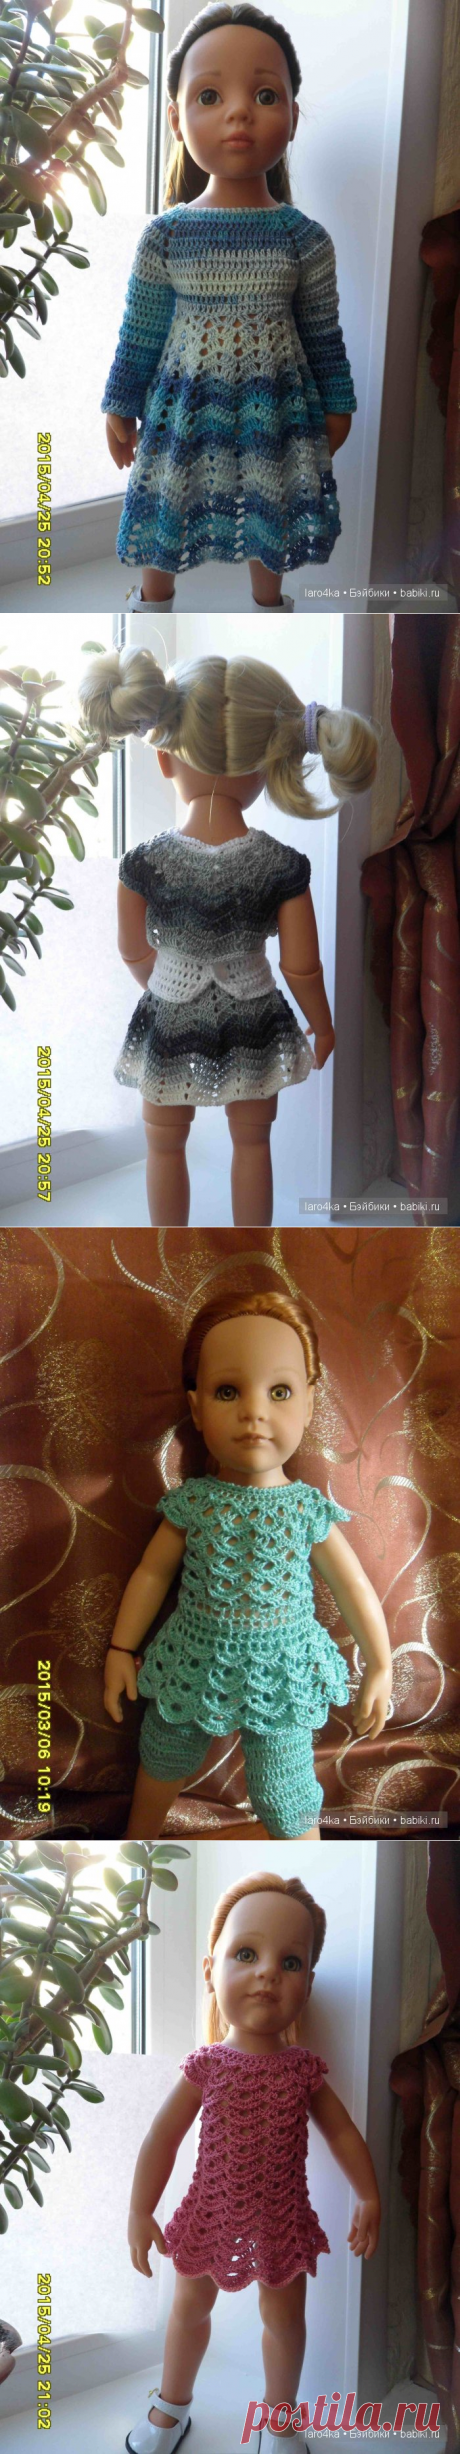 Сборная солянка. Идеи вязания одежды для кукол / Мастер-классы, творческая мастерская: уроки, схемы, выкройки кукол, своими руками / Бэйбики. Куклы фото. Одежда для кукол